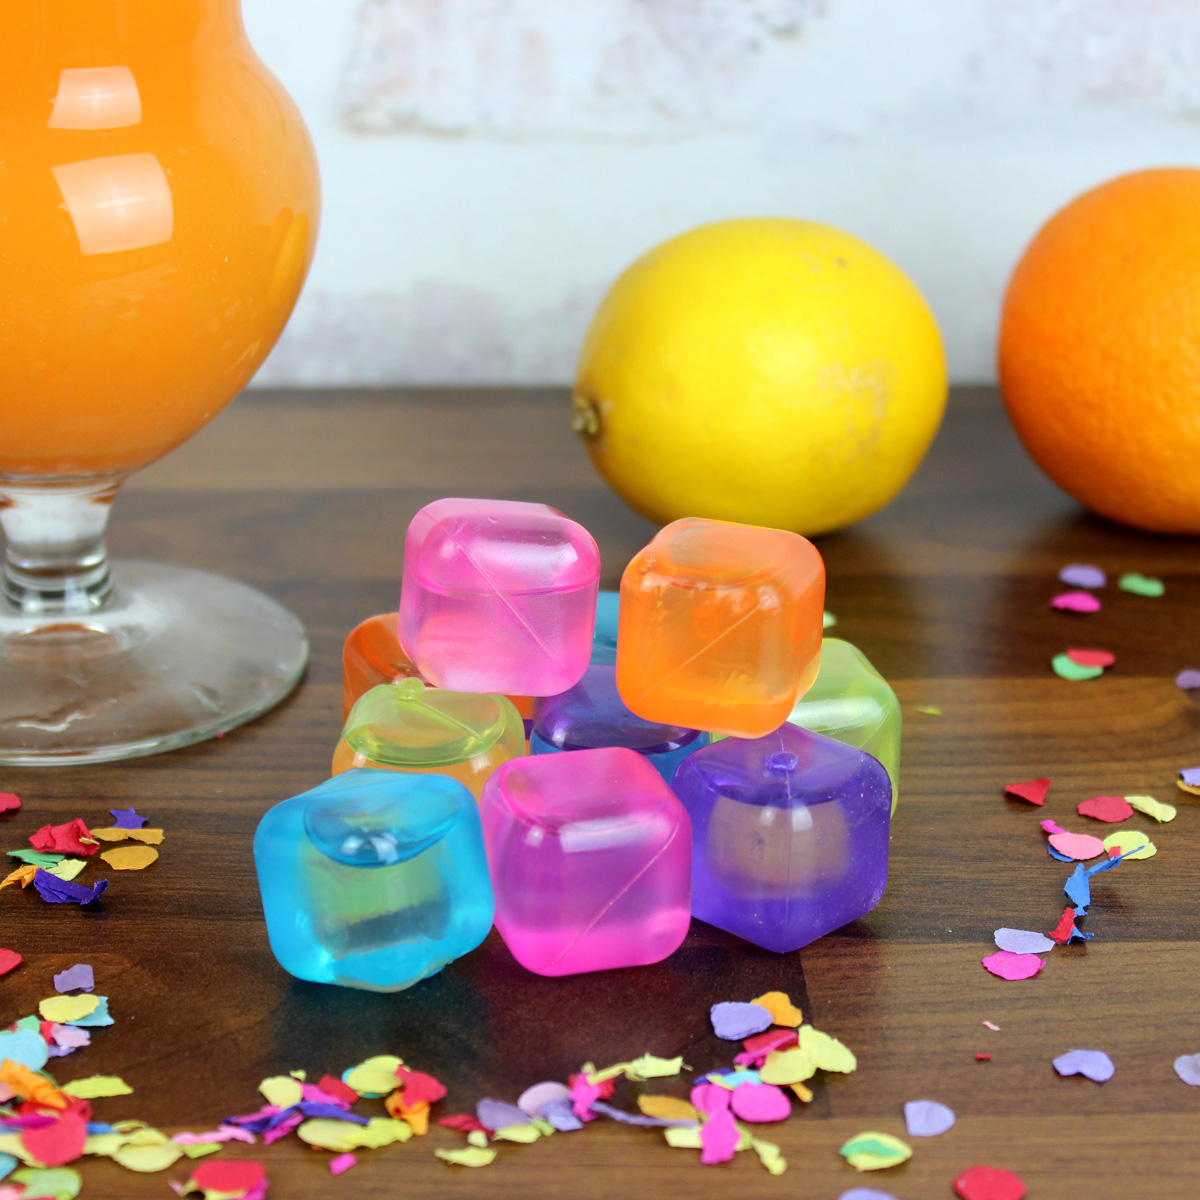 Dauereiswürfel Eiswürfel Frucht Eis Früchte bunt Party Cocktail wiederverwendbar 